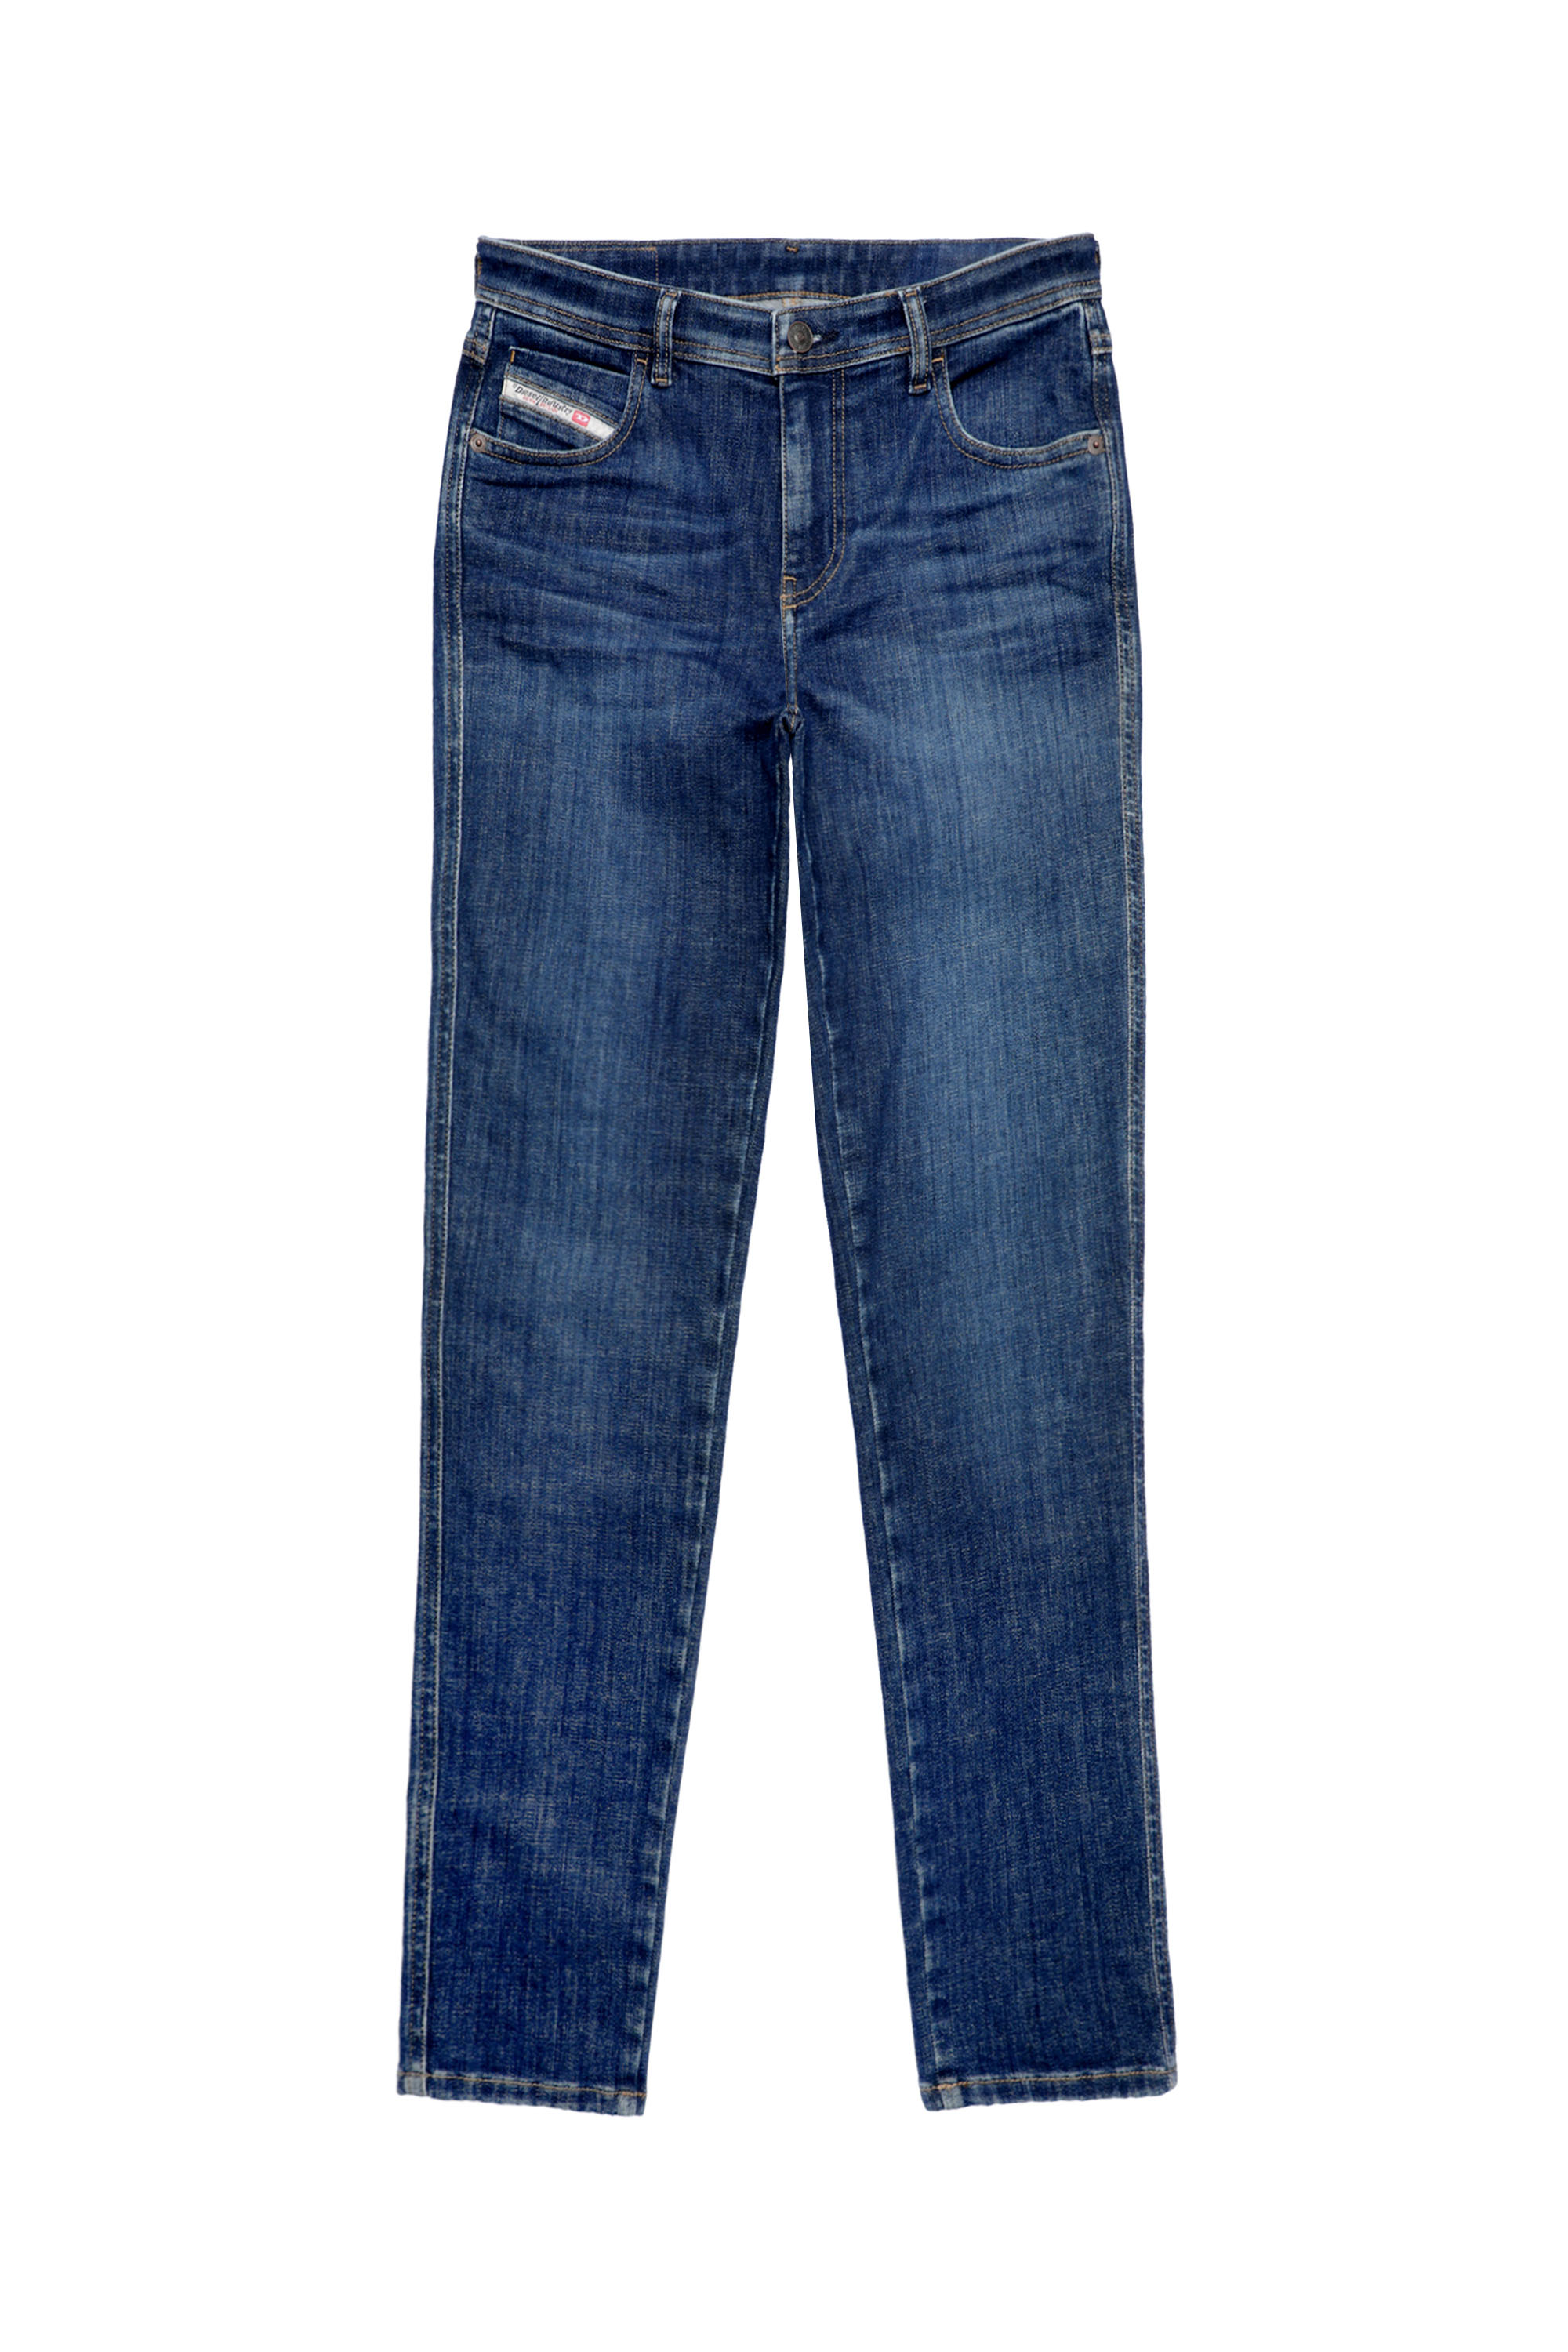 2015 Babhila 09C58 Skinny Jeans, Dunkelblau - Jeans